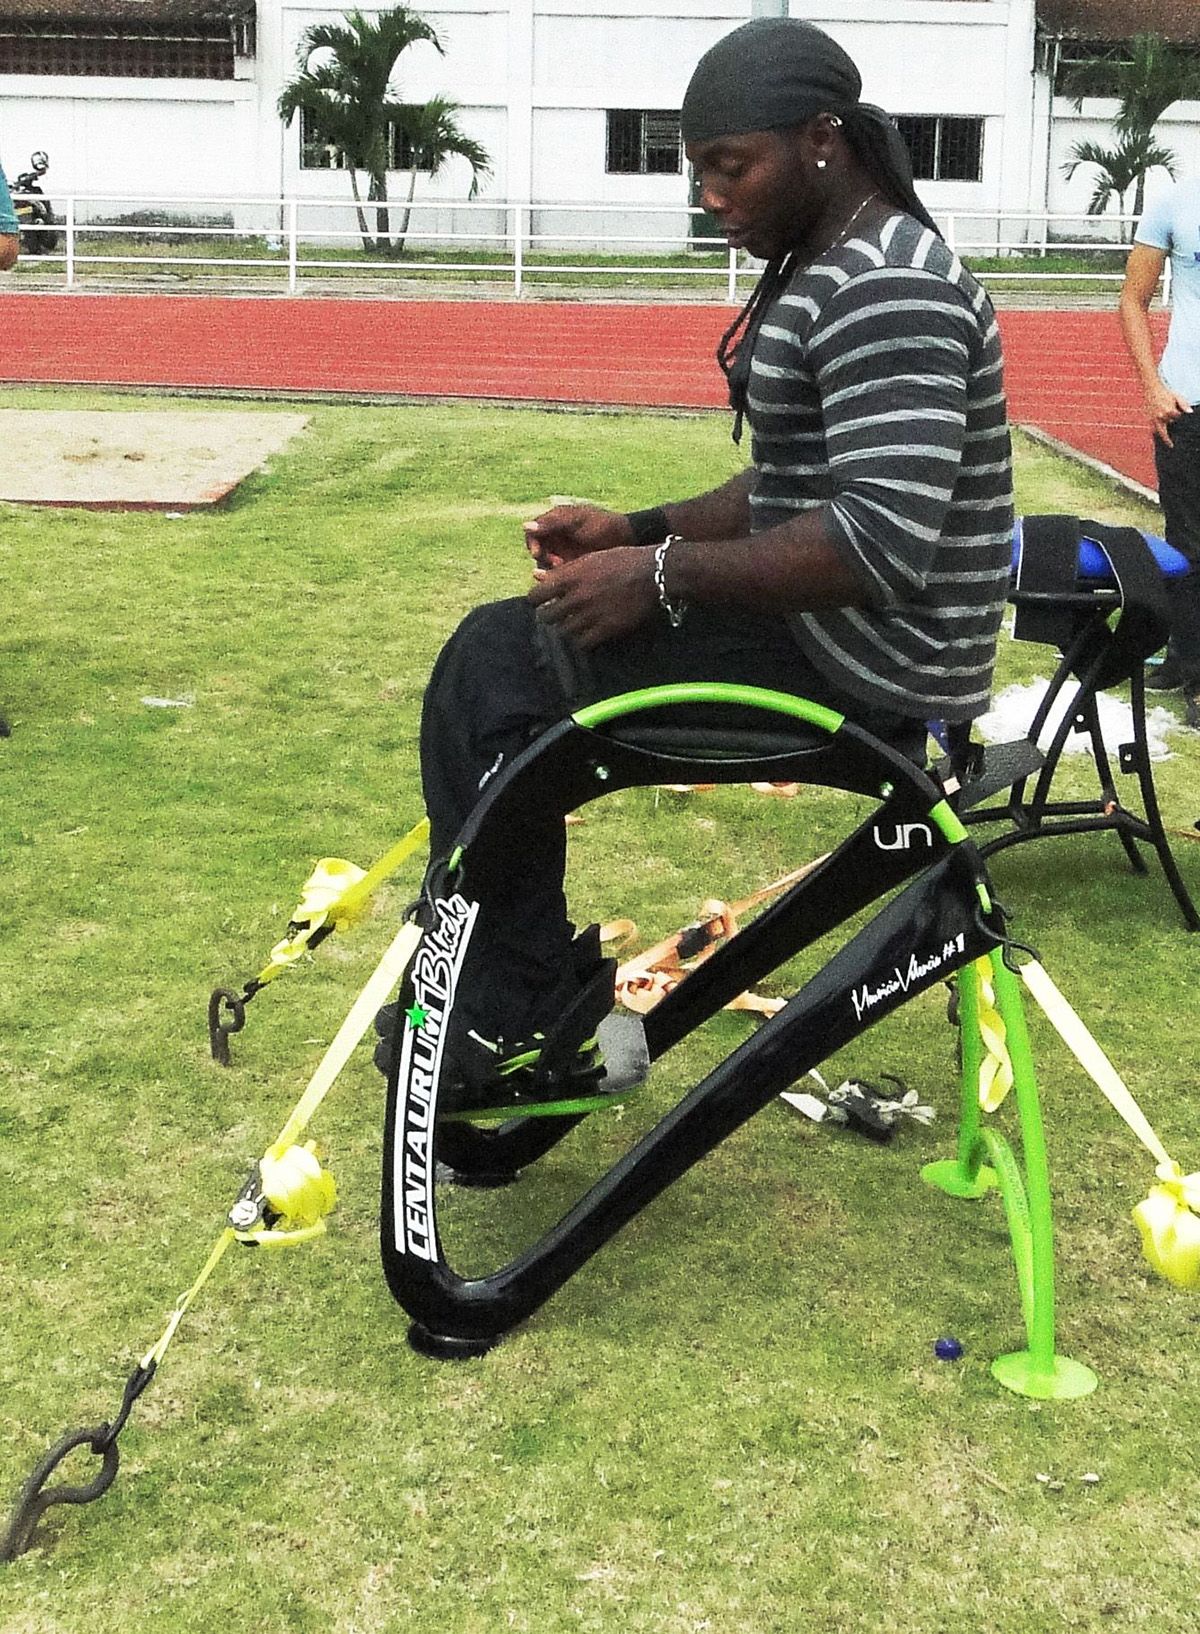 La tecnología de la silla del campeón paralímpico Mauricio Valencia